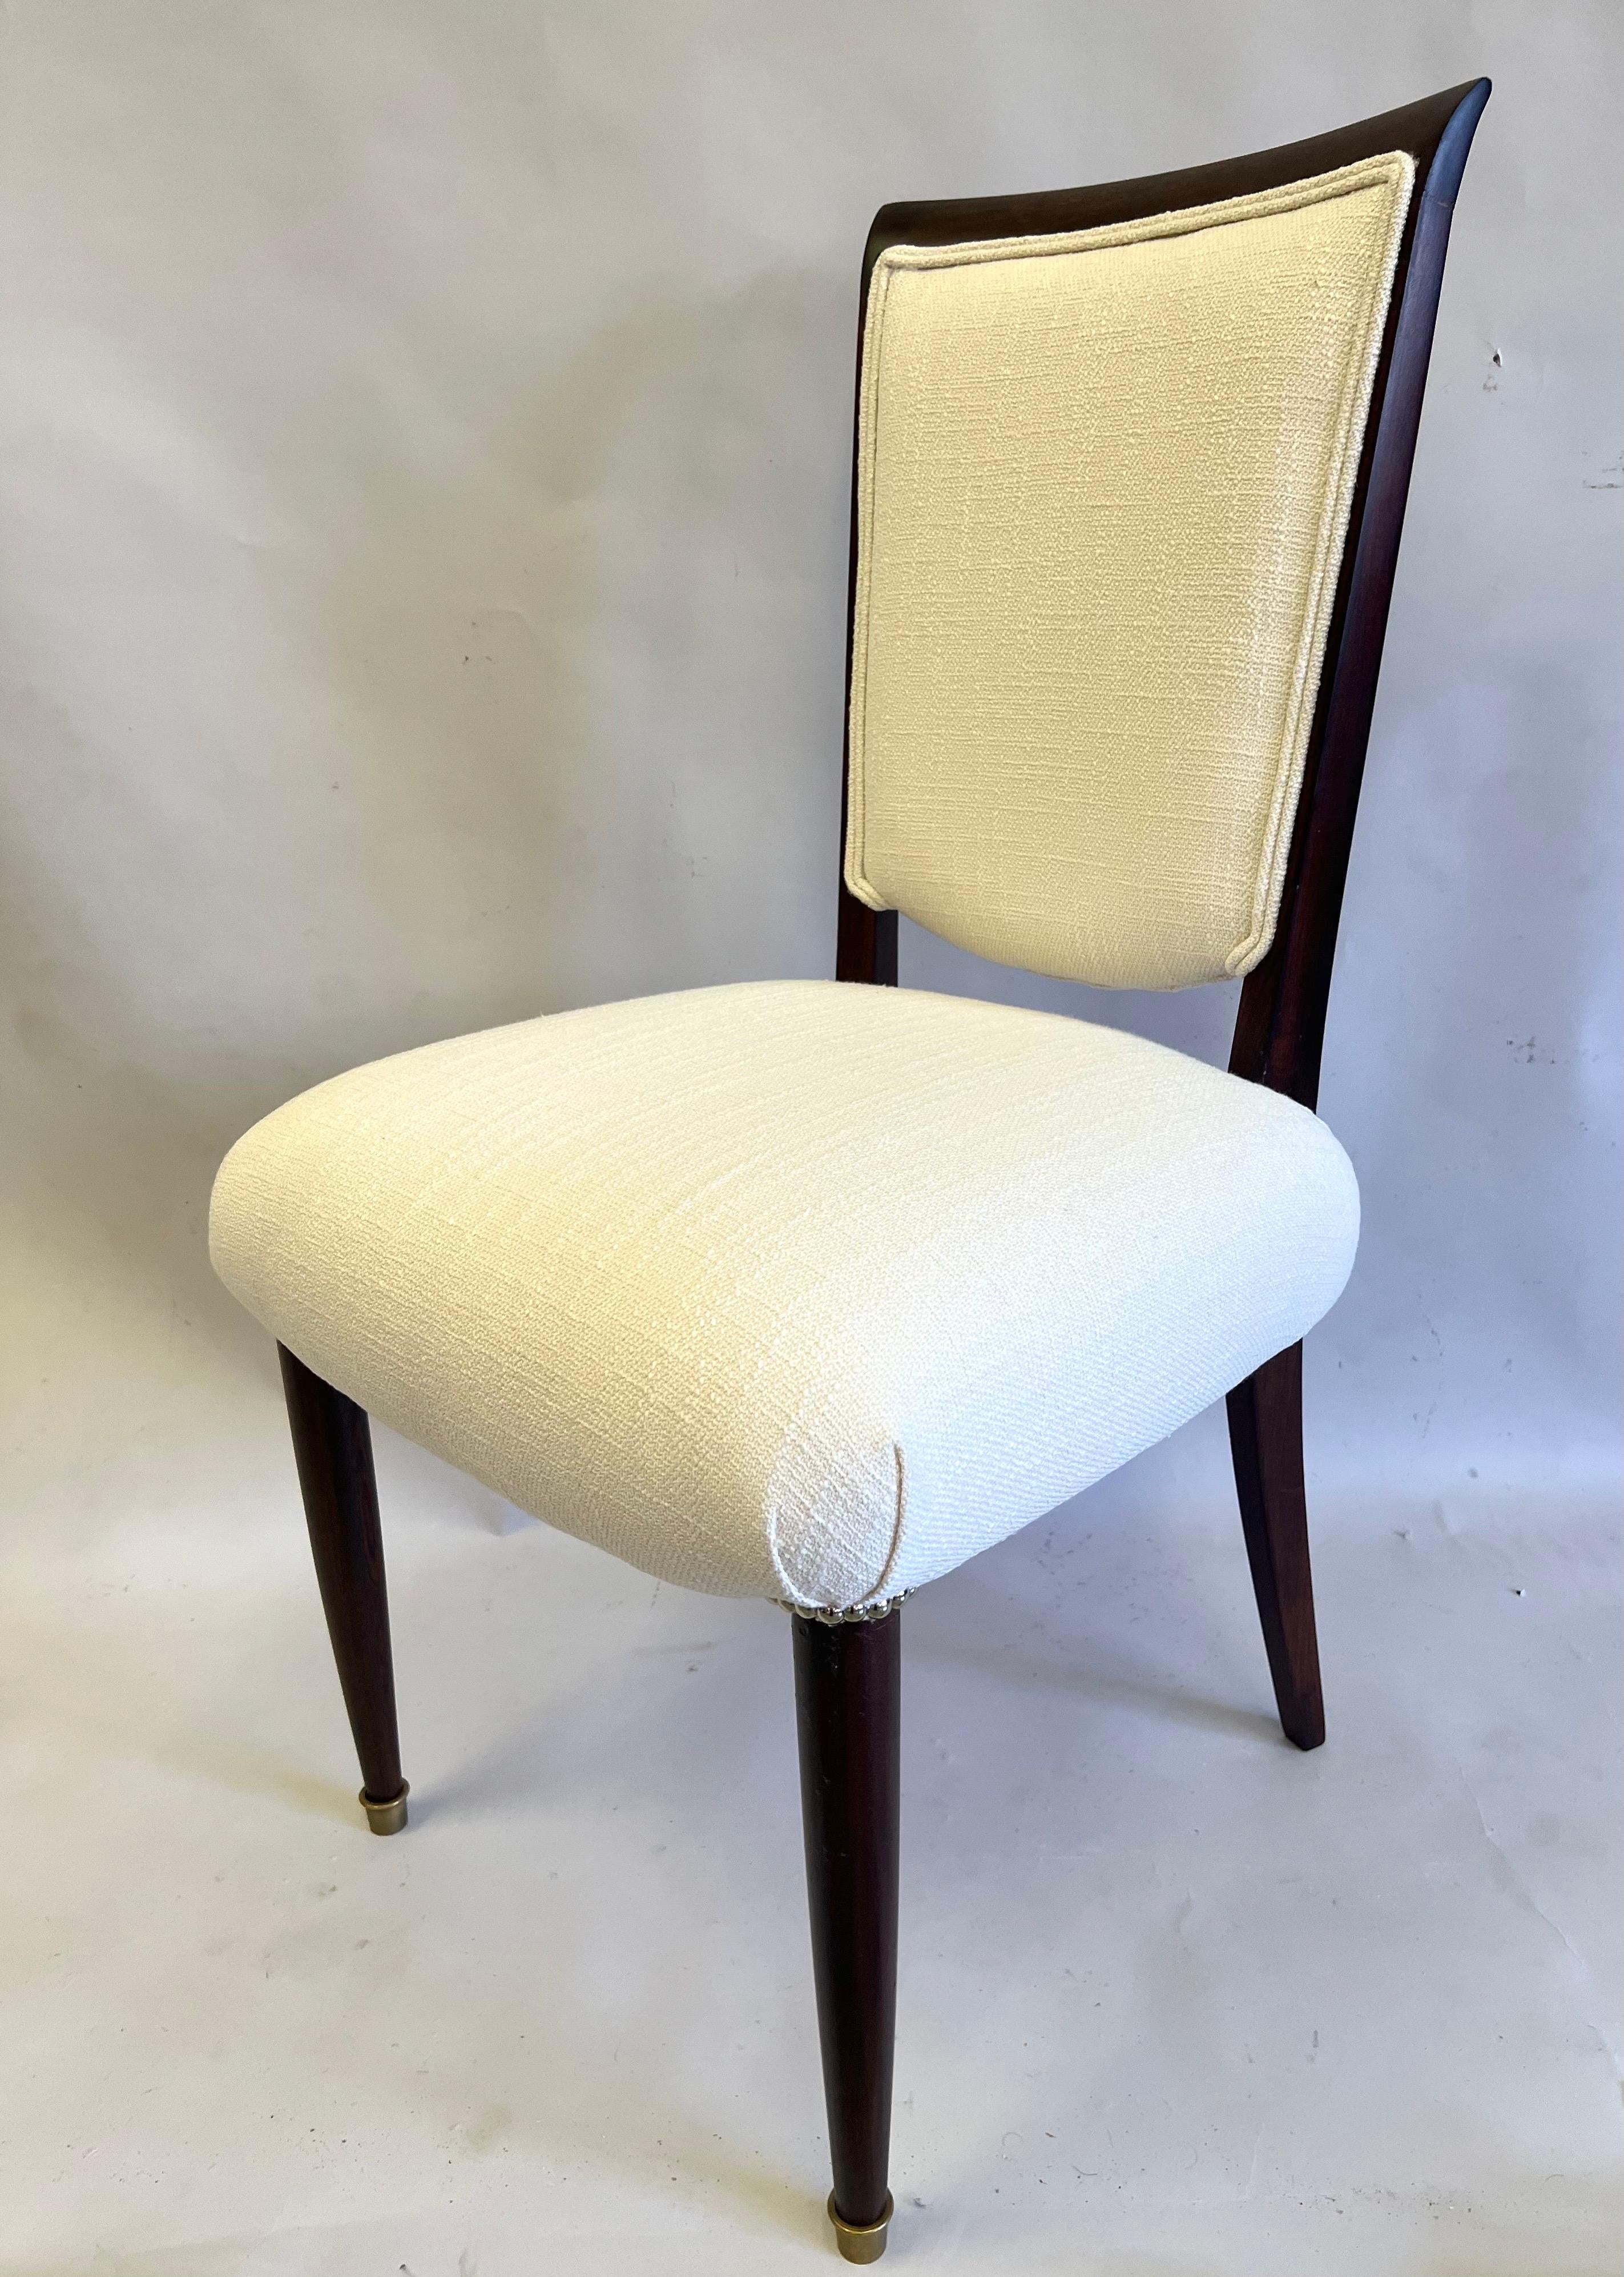 Ein wichtiges SET von 8 französischen Art Deco / Midcentury Modern Dining Room Chairs, signiert von dem französischen Meisterdesigner und Dekorateur Jules Leleu. Dieses seltene Set von Stühlen ist Ausdruck der Eleganz und des guten Geschmacks, für